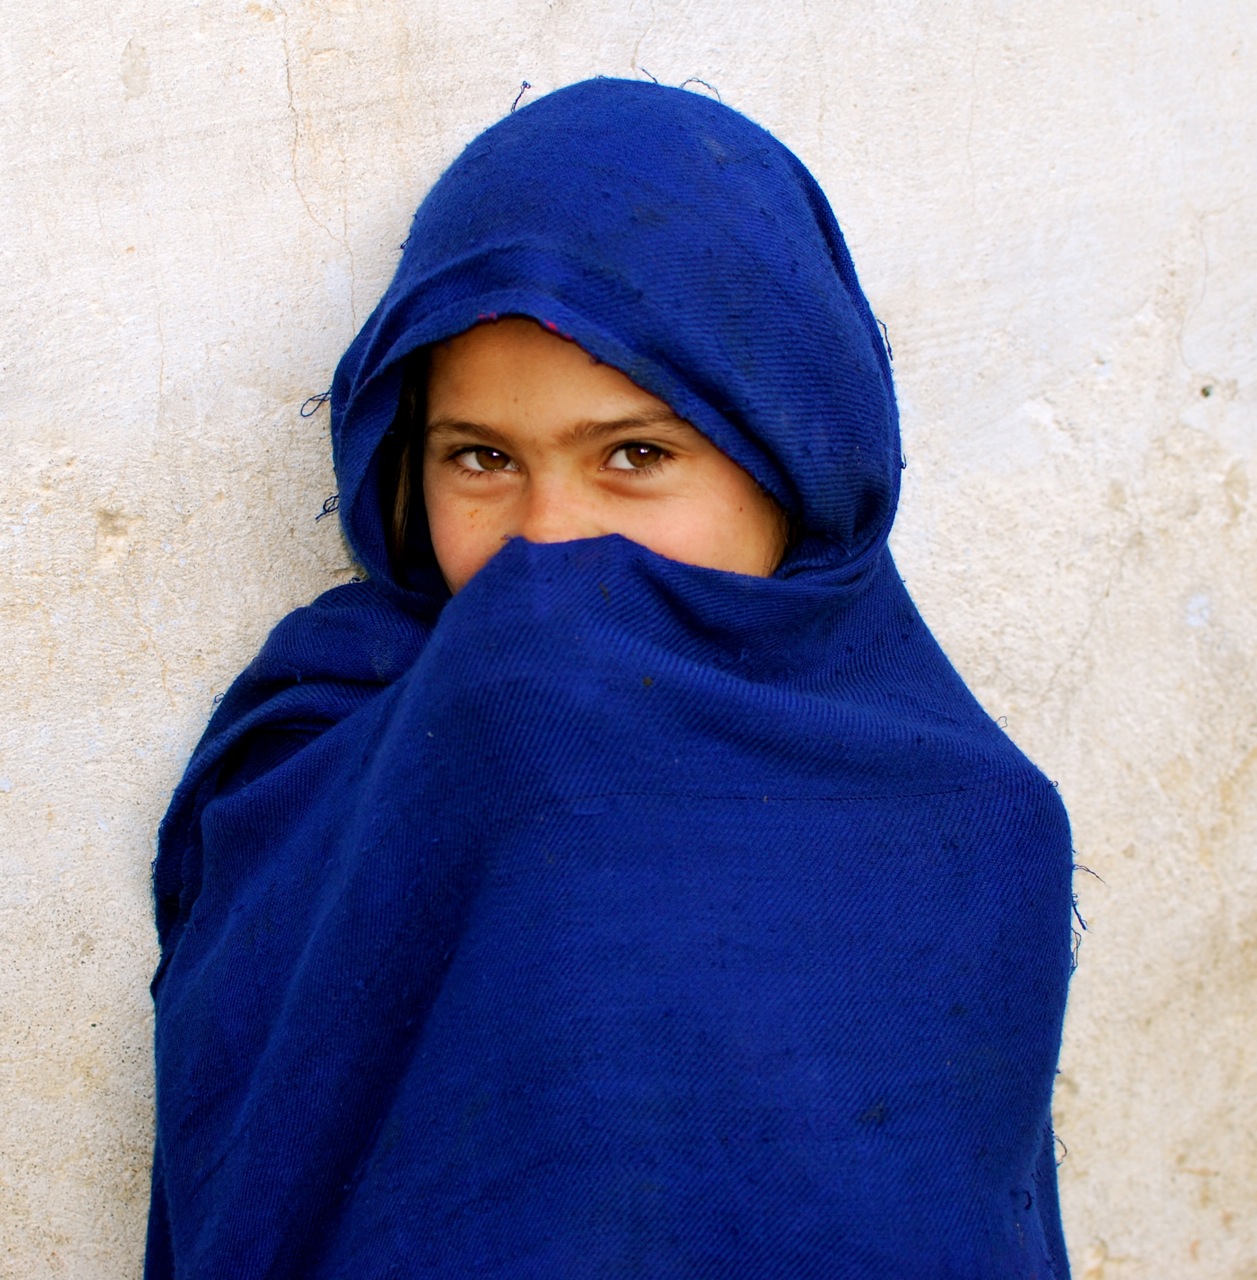 A Girl in Hathian | Nikon D60,